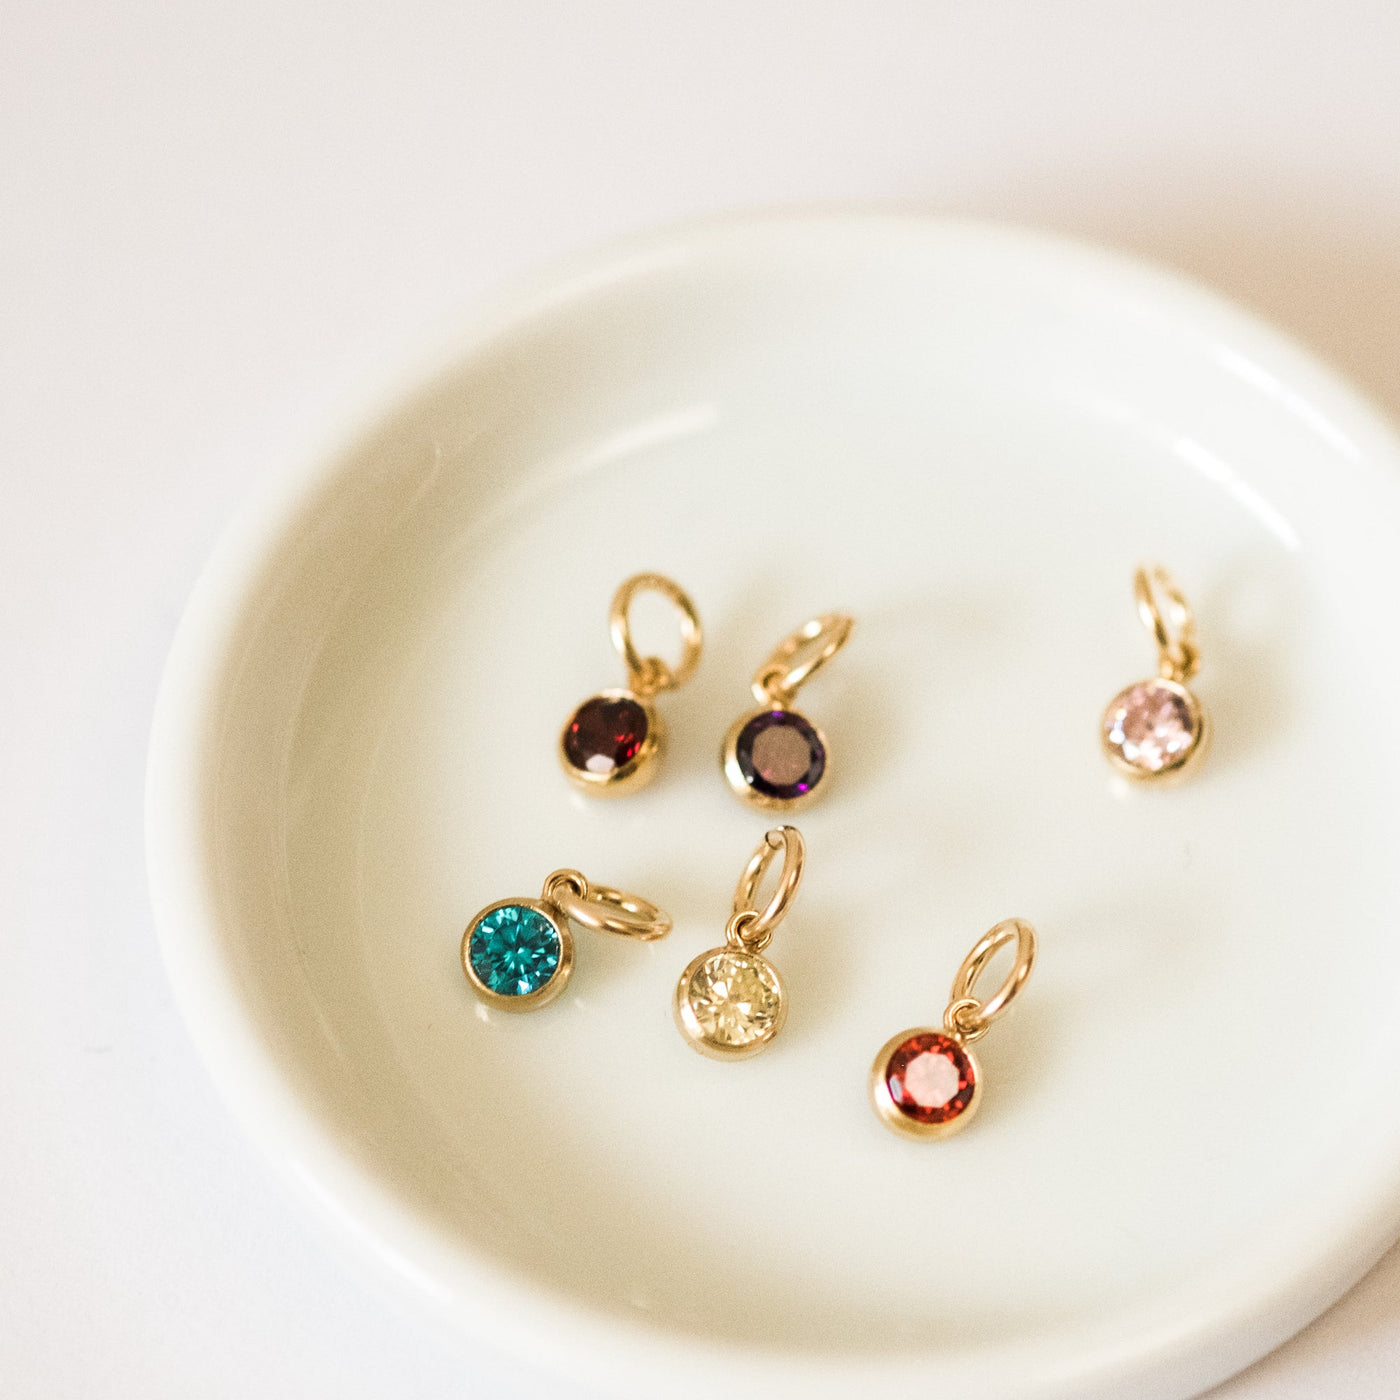 February Birthstone Charm (Amethyst) | Simple & Dainty Jewelry